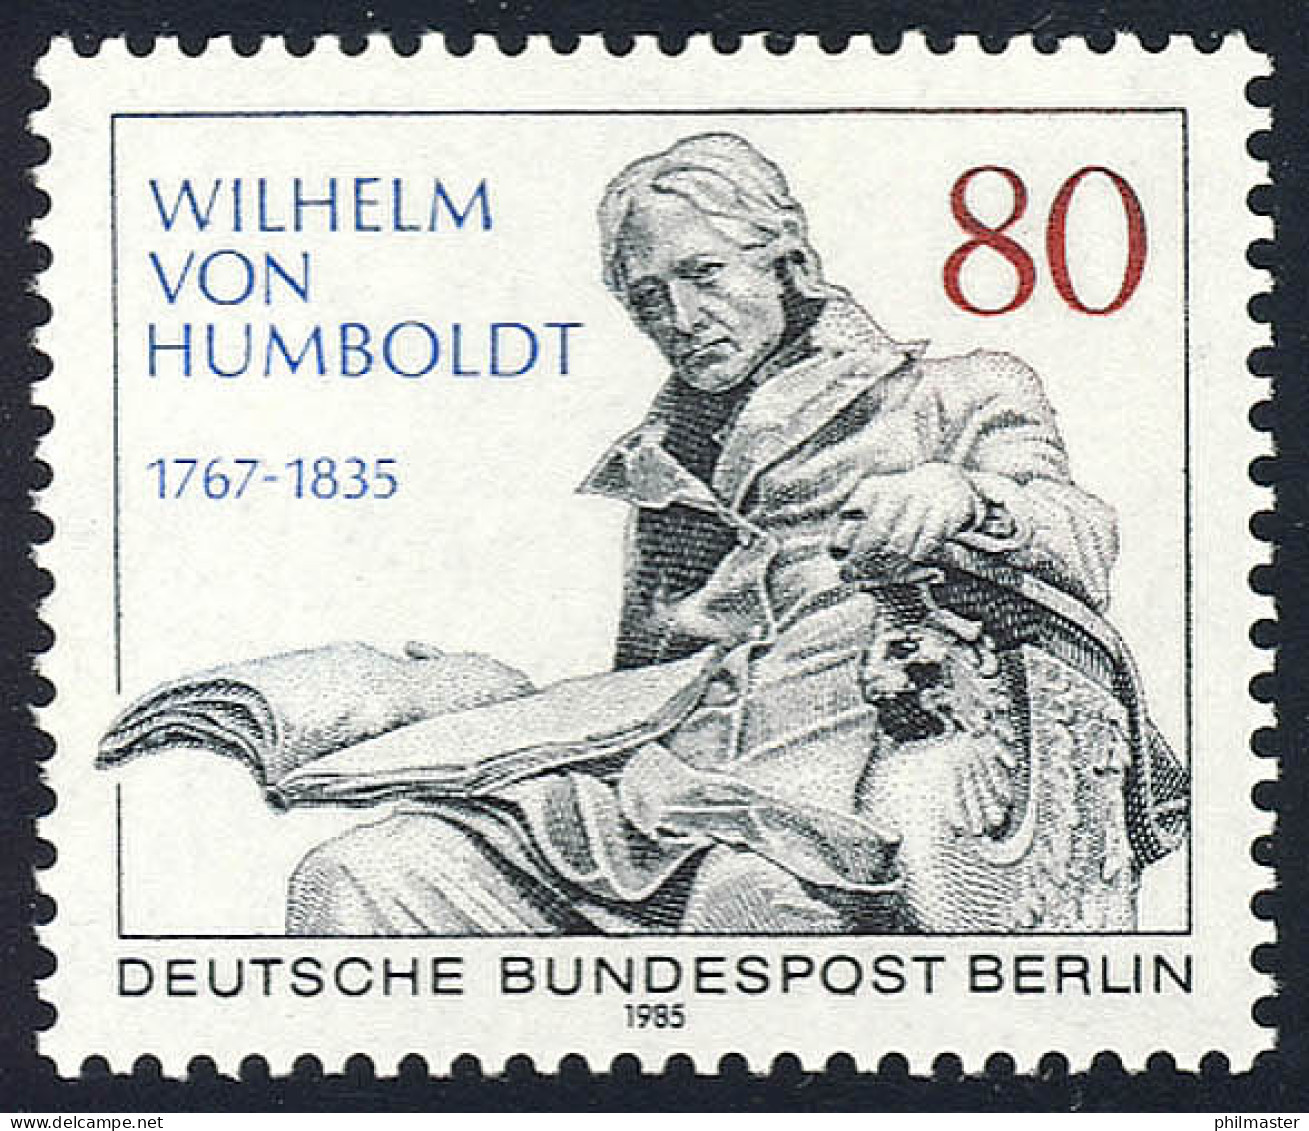 731 Wilhelm Freiherr Von Humboldt ** - Neufs